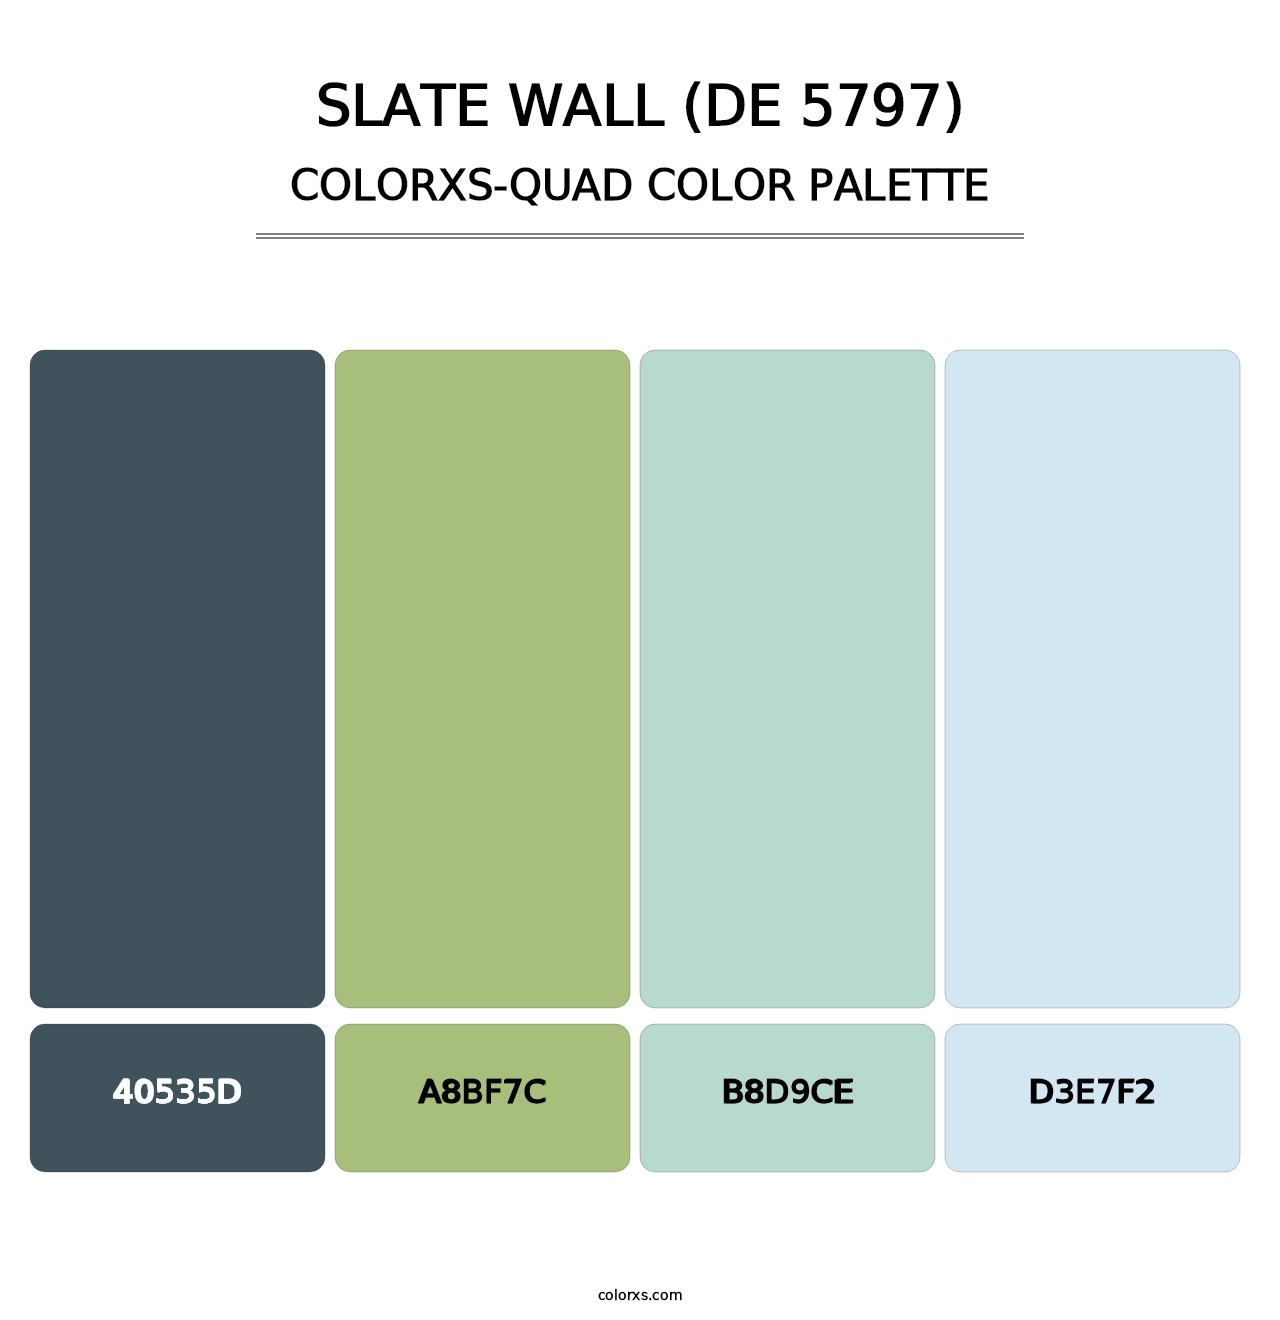 Slate Wall (DE 5797) - Colorxs Quad Palette